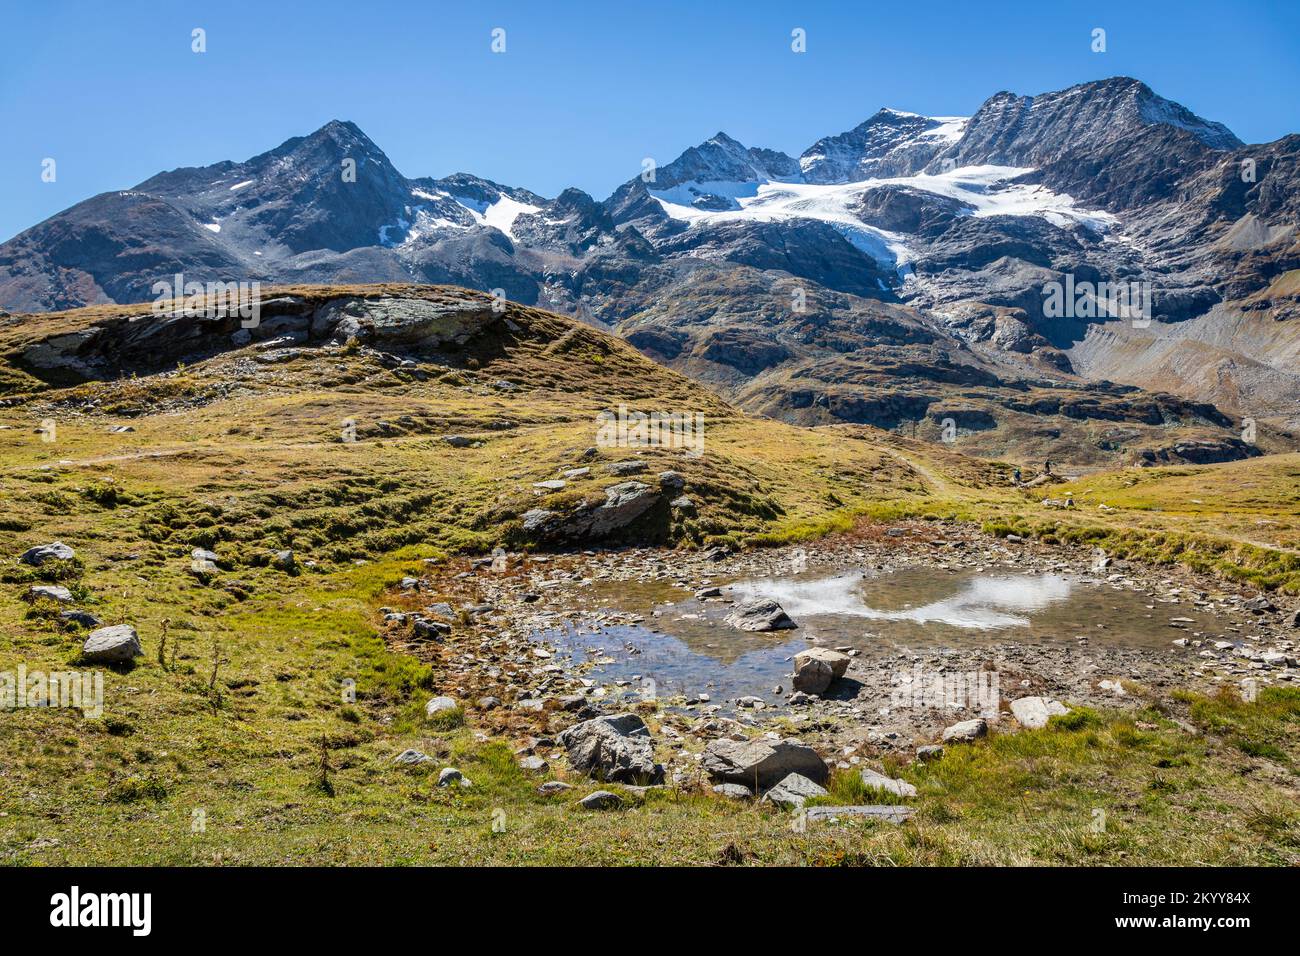 Bernina e Palu catena montuosa con lago nelle Alpi, Engadina, Svizzera Foto Stock